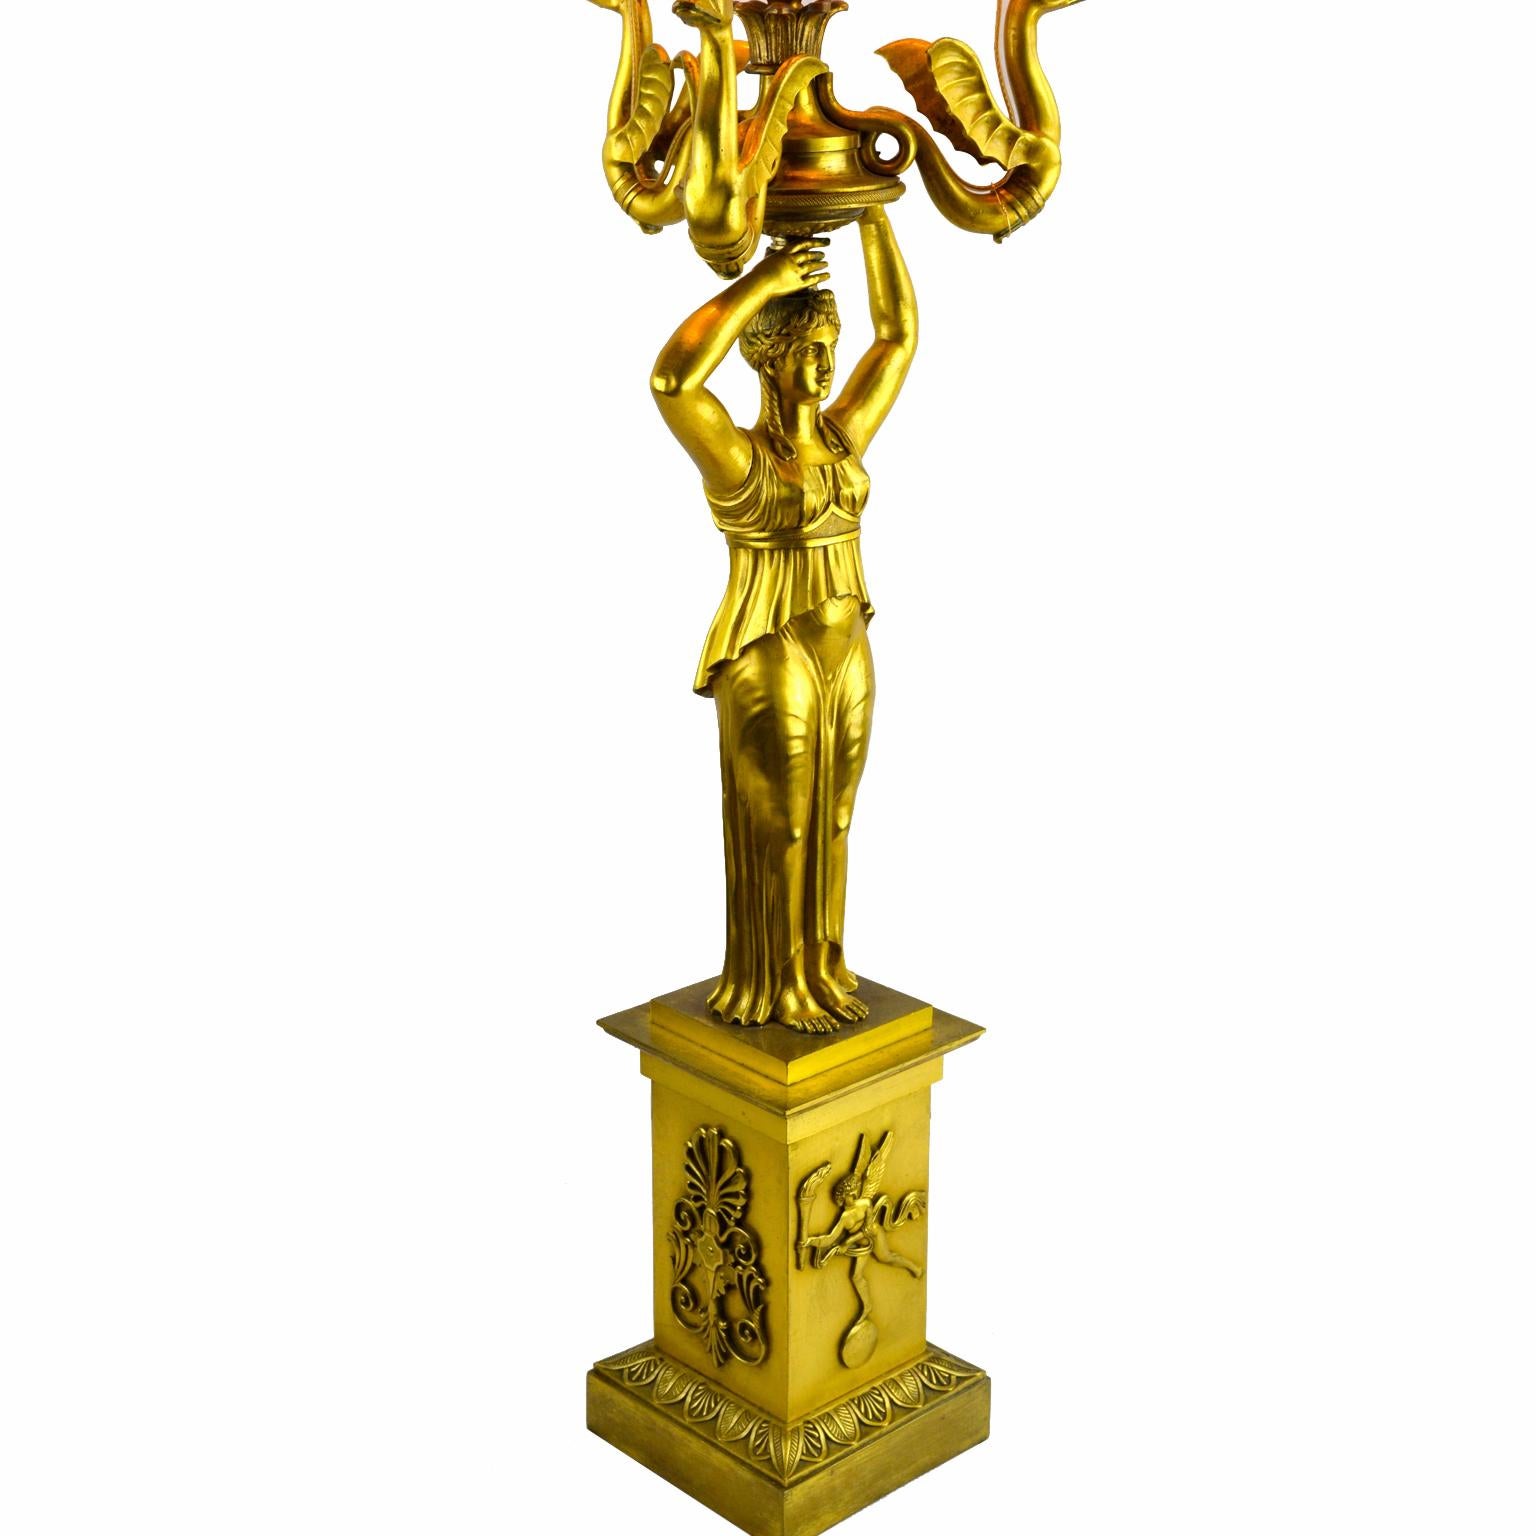 Un candélabre de style Empire russe finement moulé et doré qui a été transformé en lampe ; présentant une jeune fille classique tenant en l'air trois hippocampes ailés terminés par des becs de bougie autour d'un bec de flamme central ; la base